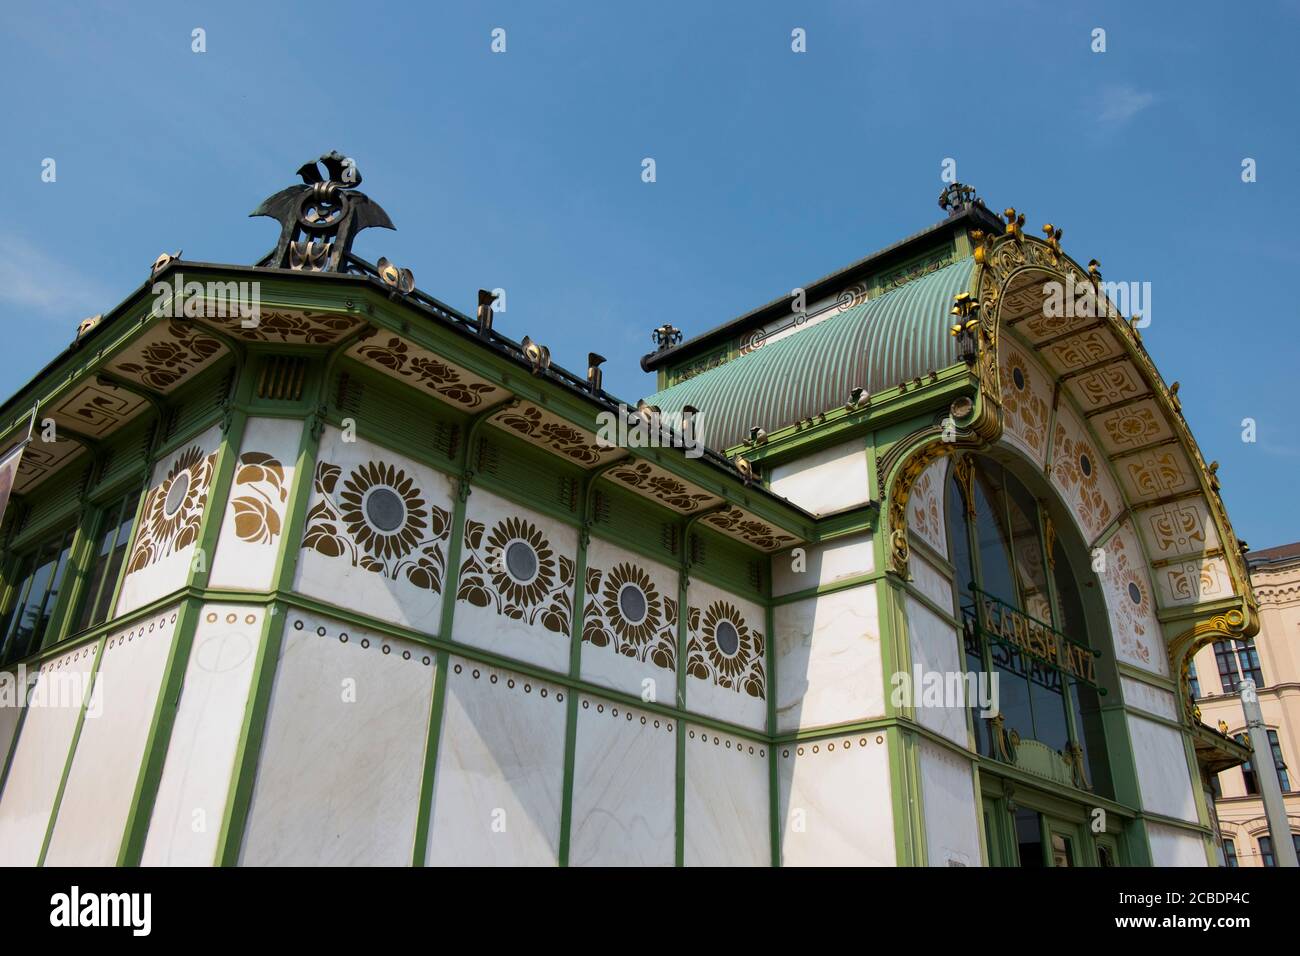 Facciata esterna con vista su marmo bianco Art Nouveau e metallo verde, stazione di Karlsplatz in ferro, progettata dall'architetto otto Wagner. A Vienna, Austria. Foto Stock